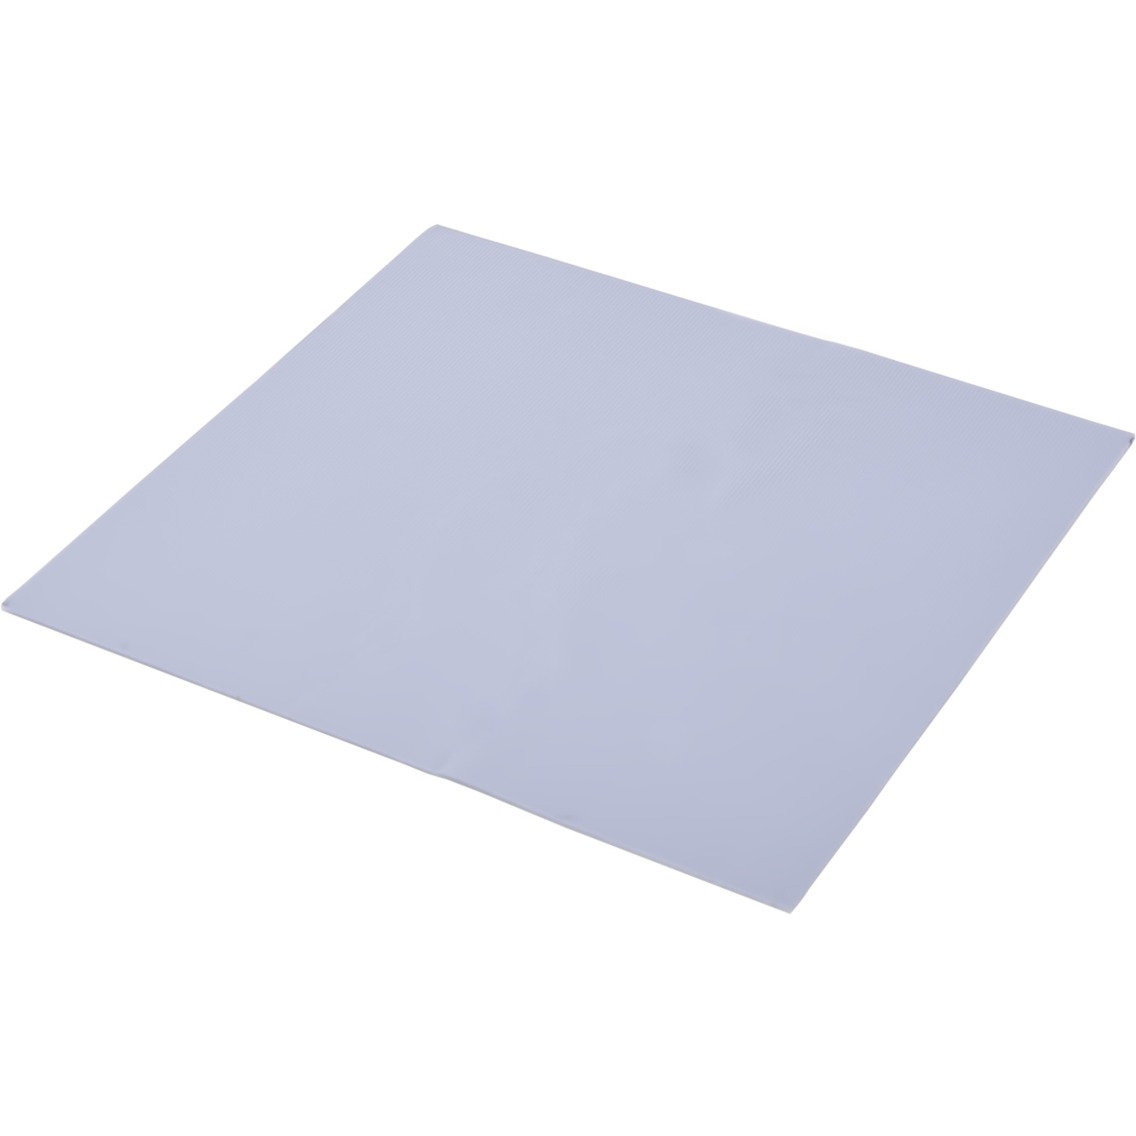 Image of Alternate - Eisschicht Wärmeleitpad - 17W/mK 100x100x0,5mm, Wärmeleitpads online einkaufen bei Alternate